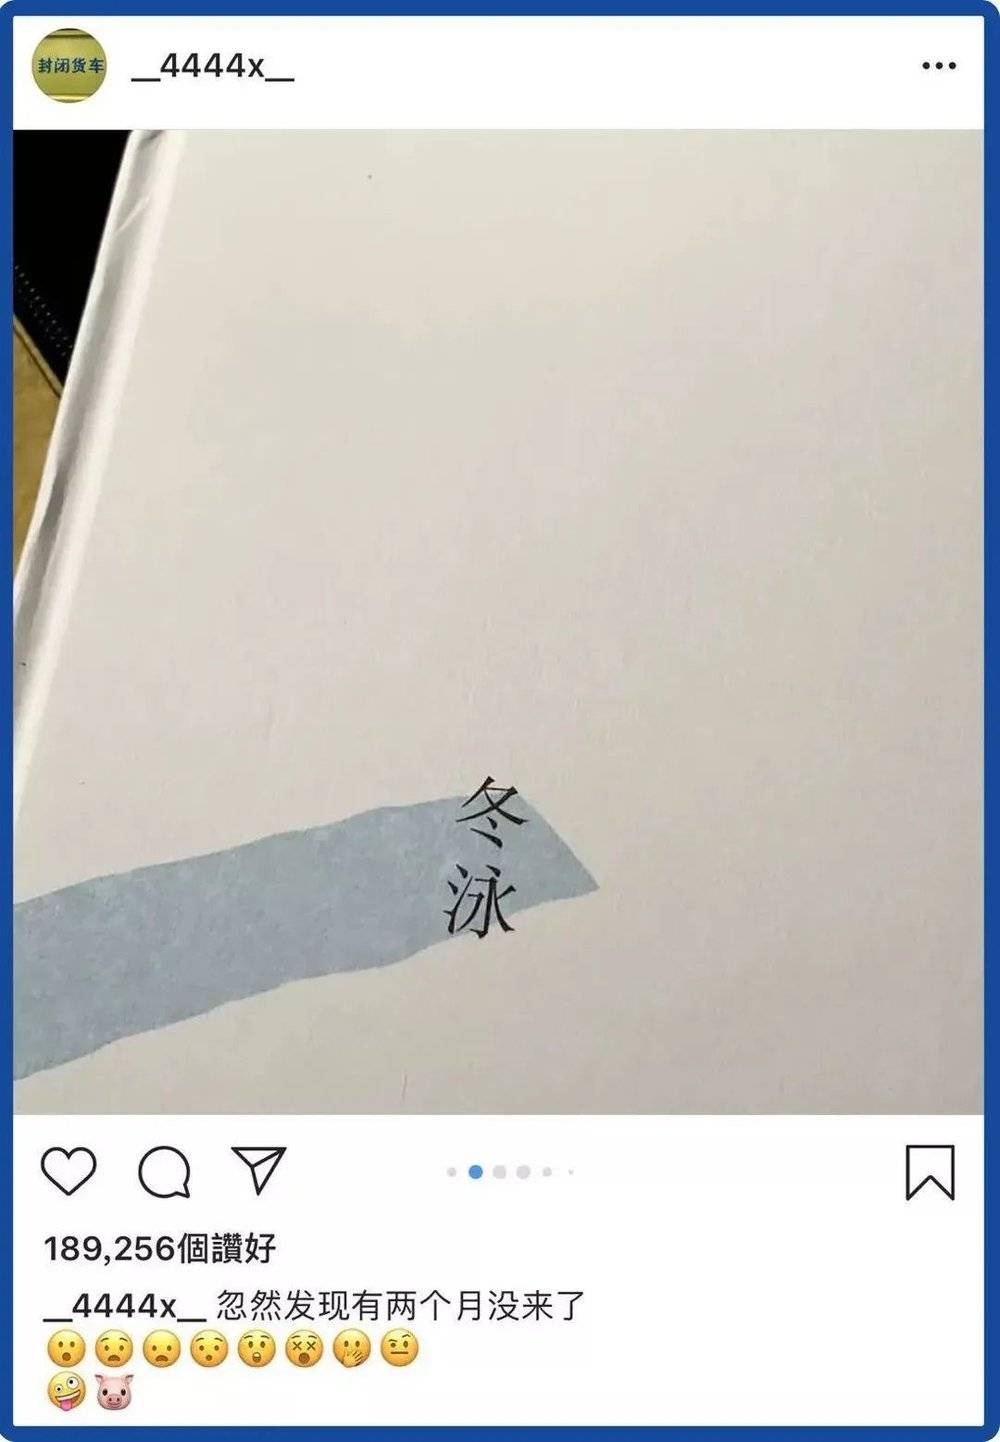 明星易烊千玺曾在自己的Instagram上推荐过青年班宇的作品《冬泳》，此后该作品被广泛关注。/易烊千玺Instagram<br label=图片备注 class=text-img-note>